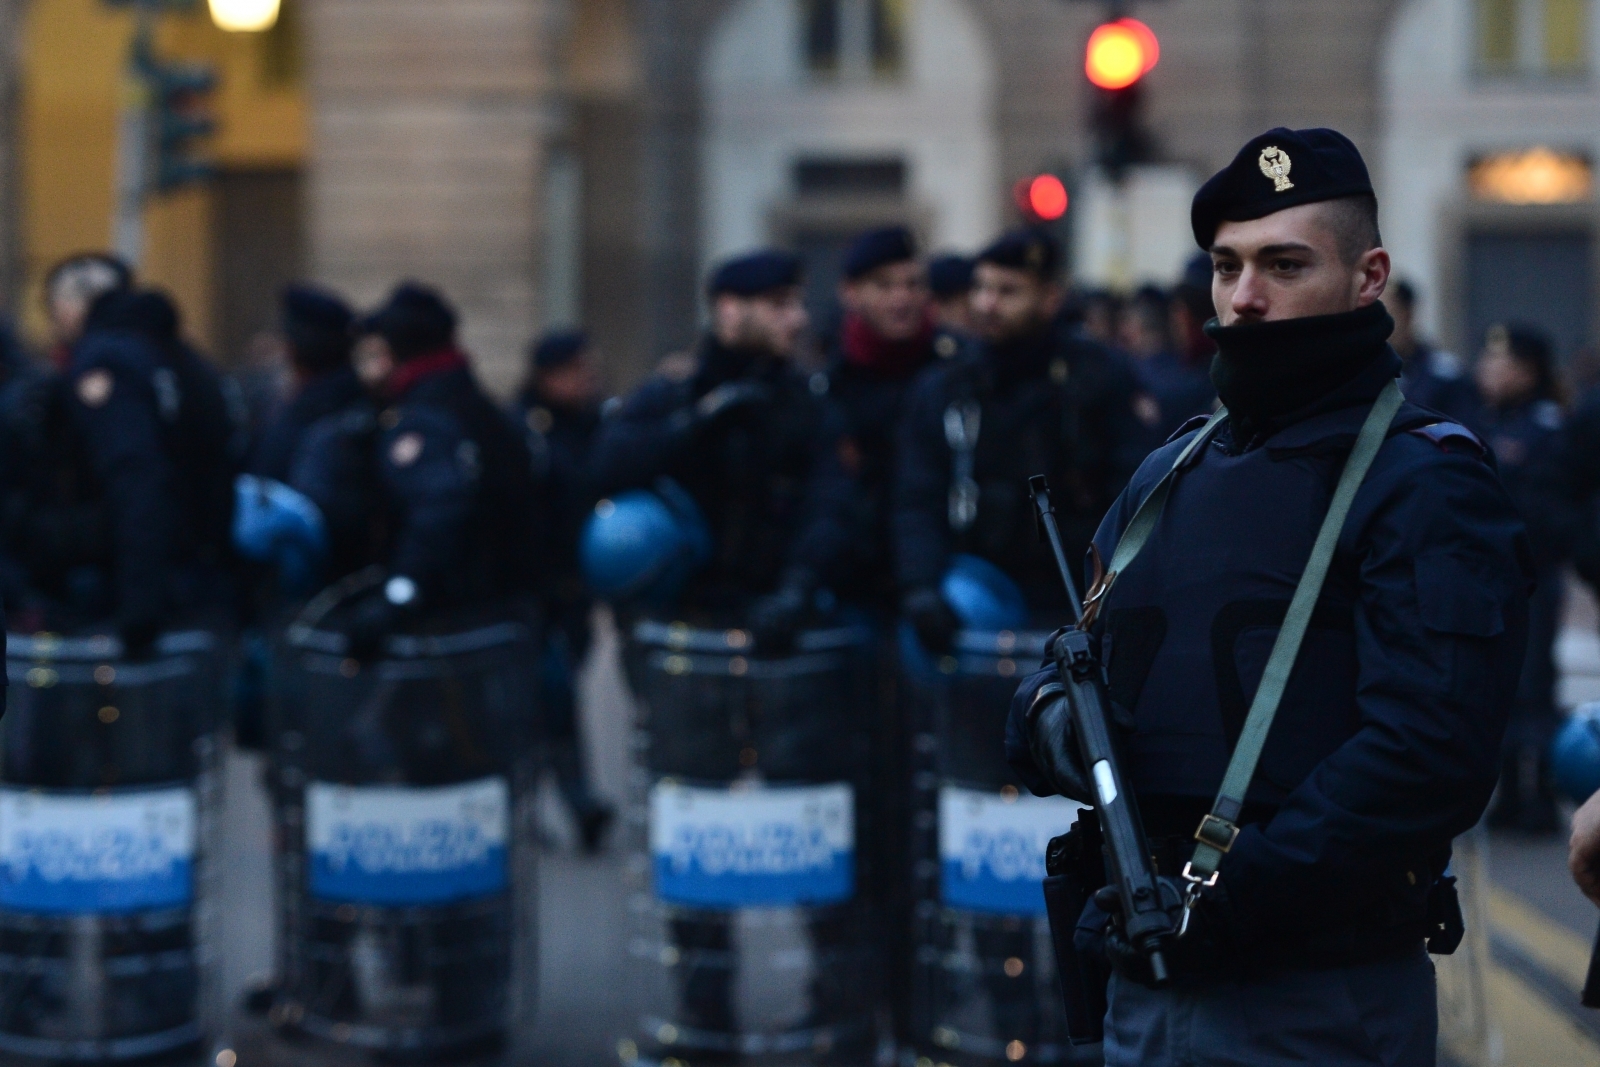 Ιταλία: Ο 23χρονος τζιχαντιστής που συνελήφθη στο Τορίνο στρατολογούσε υποψήφιους «μοναχικούς λύκους»